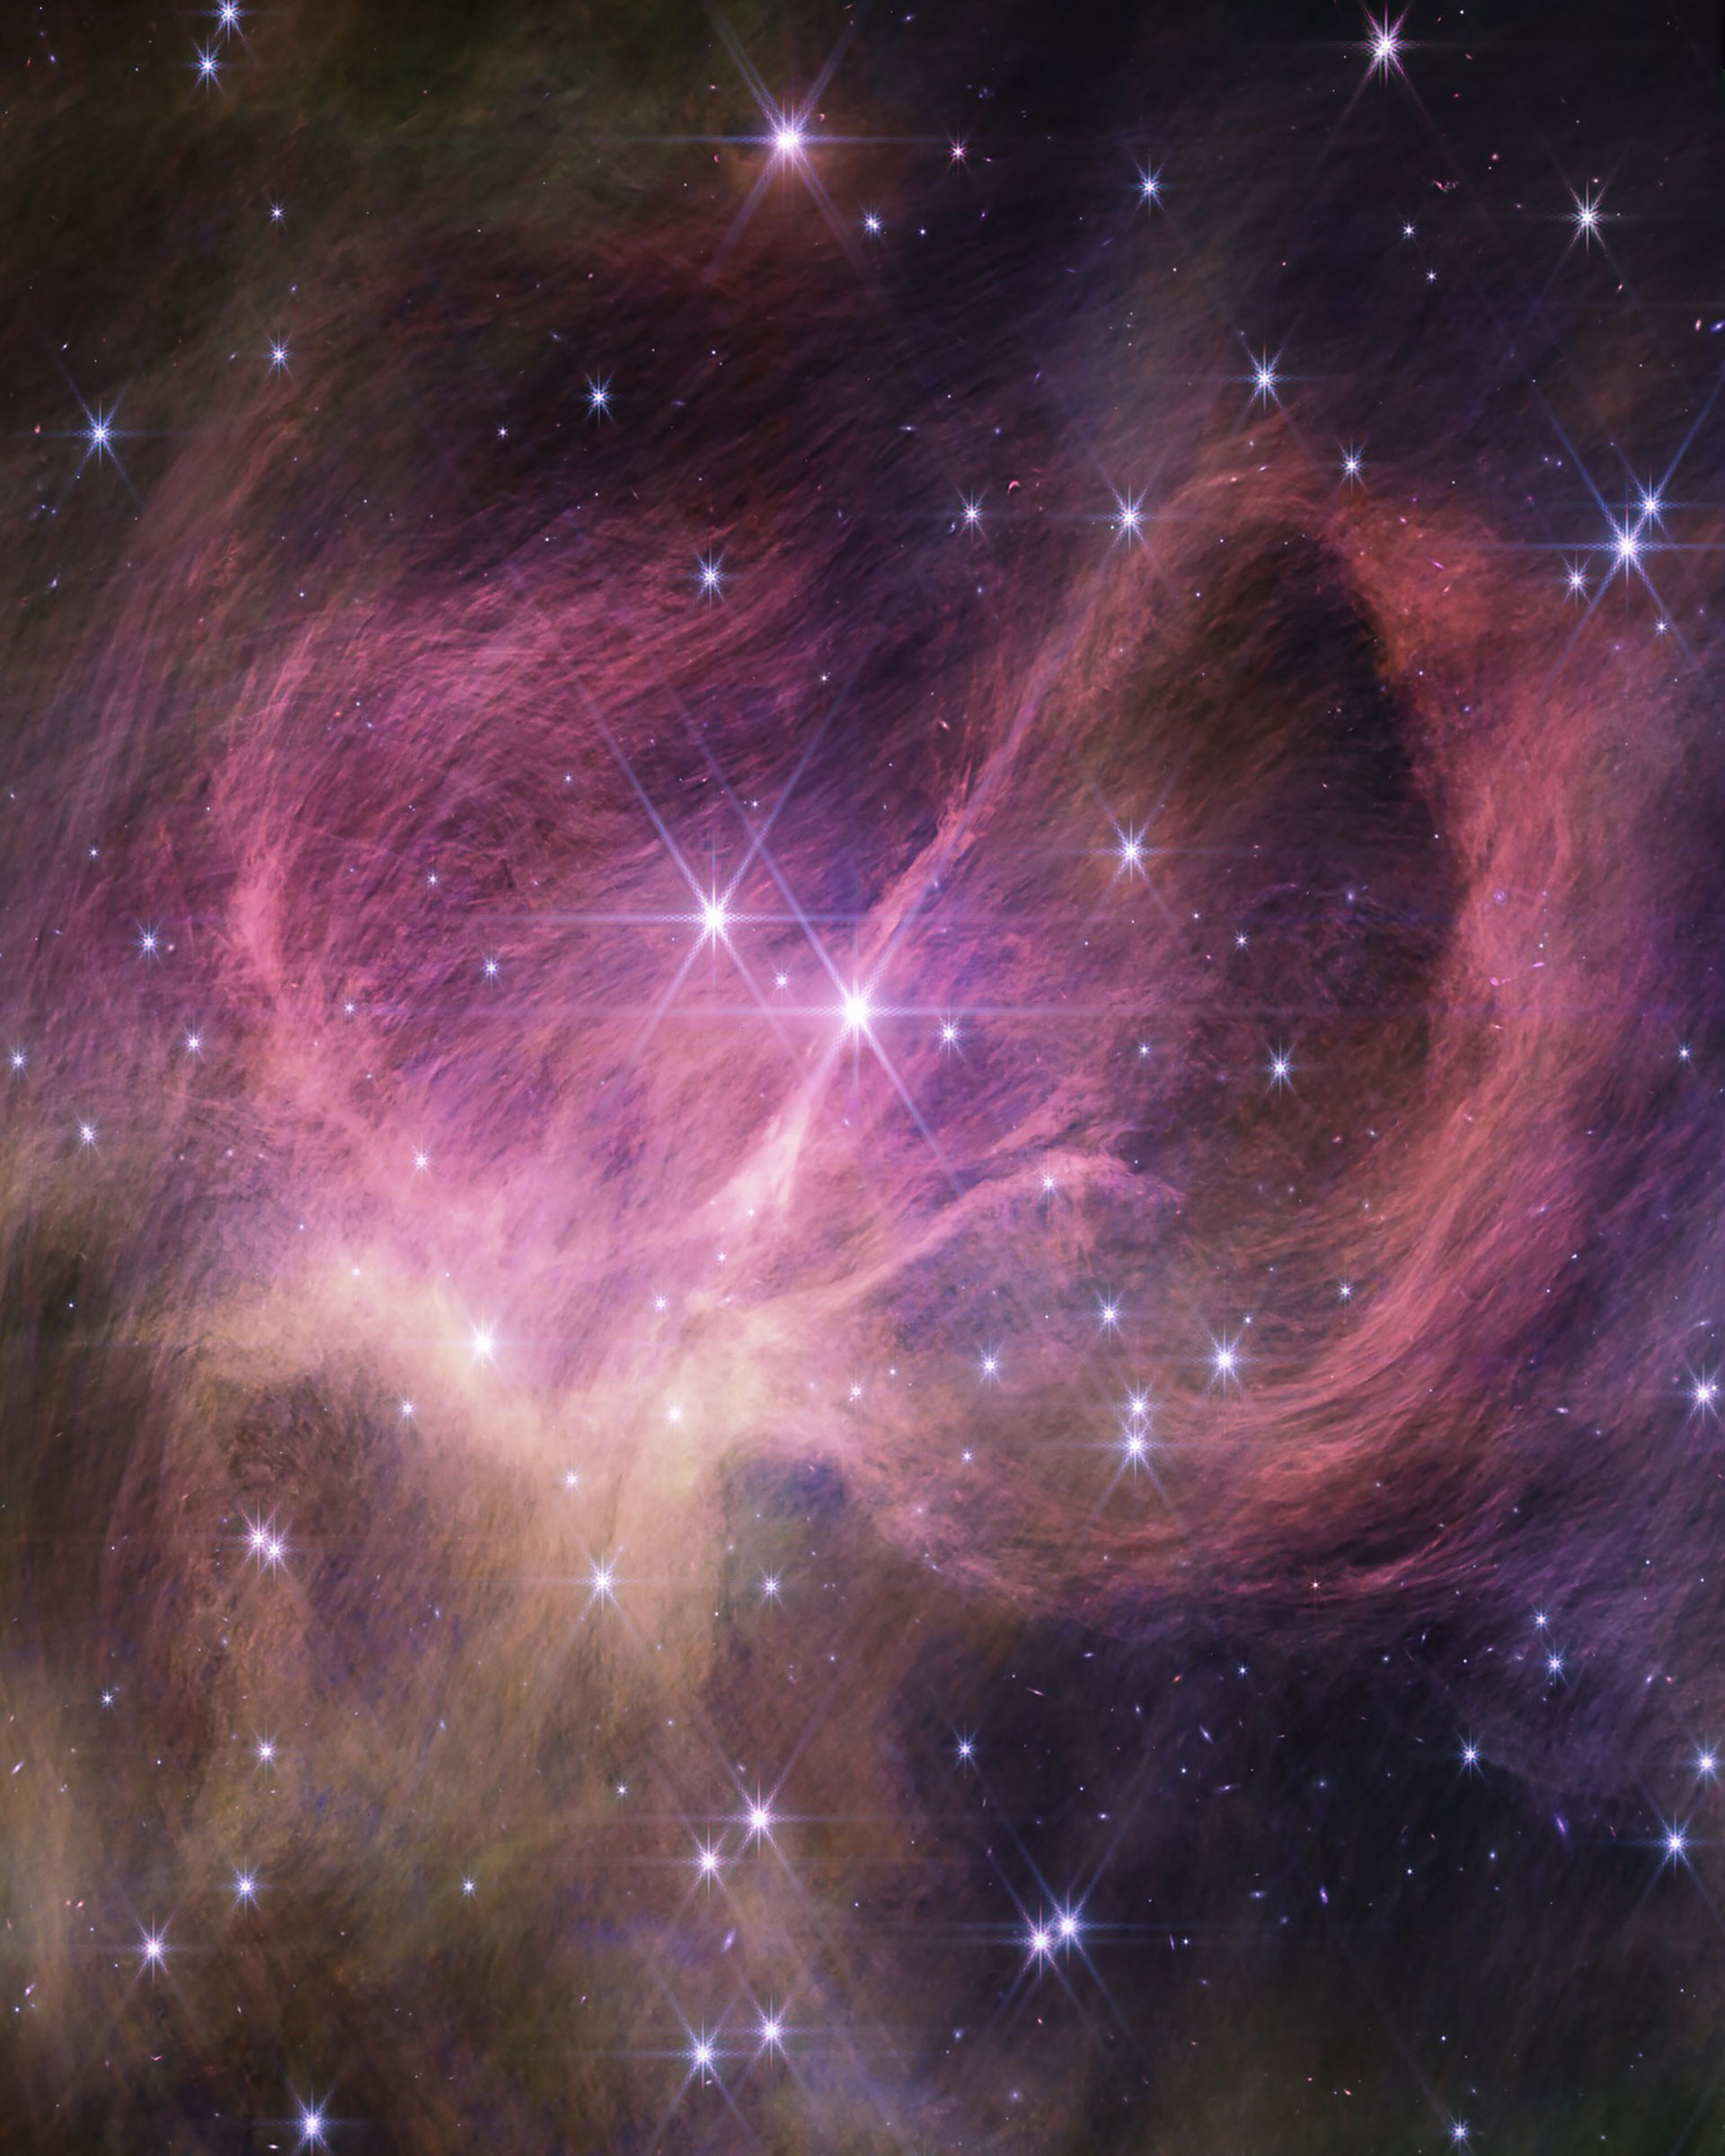 Filamentos finos, semelhantes a cabelos, rosa-púrpura, preenchem o meio da imagem, curvando-se para a esquerda e para a direita em cada lado do centro.  À direita, os filamentos formam um laço dramático que parece se estender em direção ao observador.  No canto inferior esquerdo estão filamentos amarelados adicionais.  Duas estrelas brilhantes e proeminentes perto do centro da imagem mostram os picos de difração de oito pontos de Webb.  Dezenas de estrelas mais fracas estão espalhadas pela imagem.